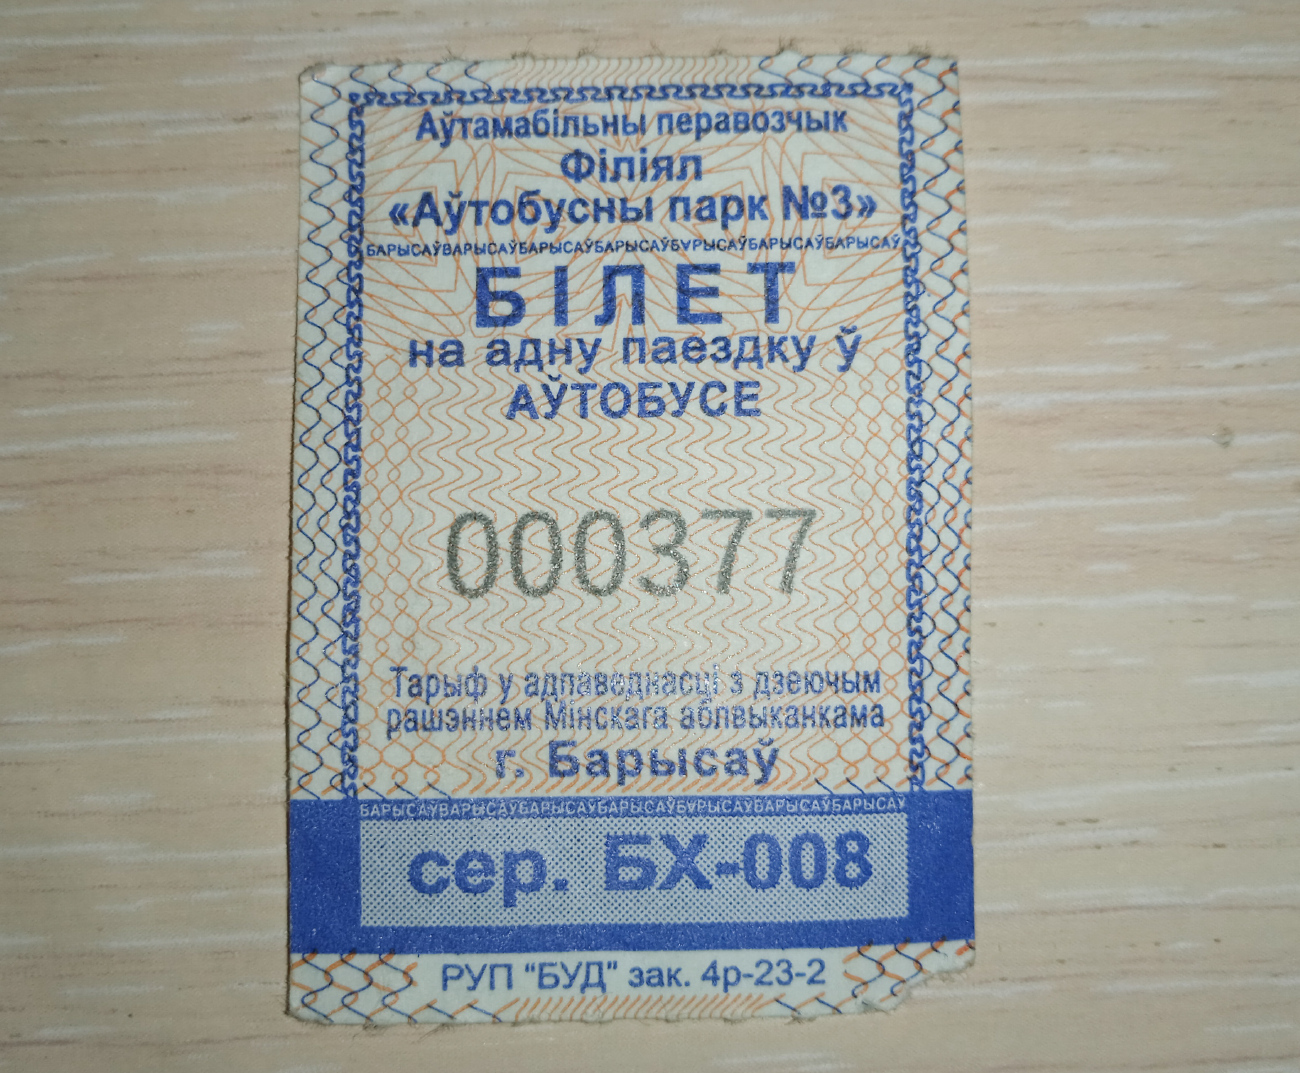 Borisov — Tickets